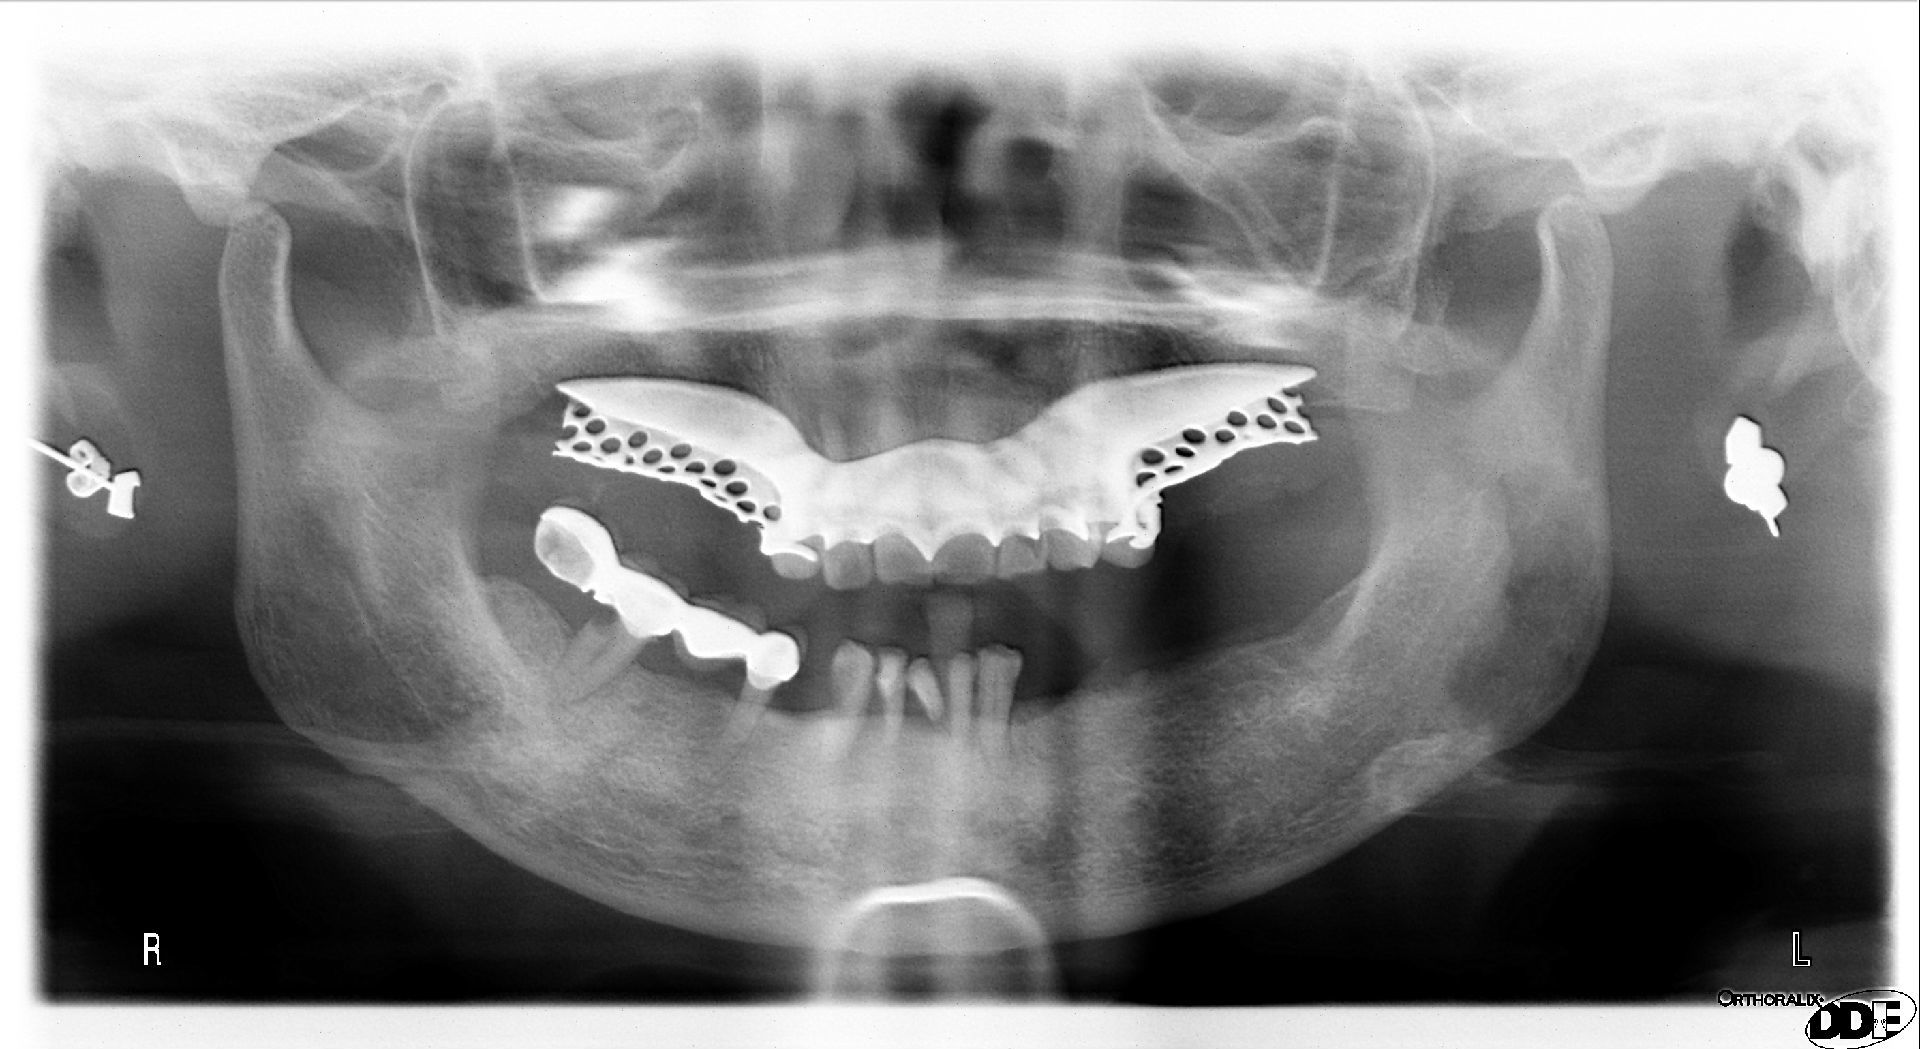 正常牙齿侧面图 x光片图片